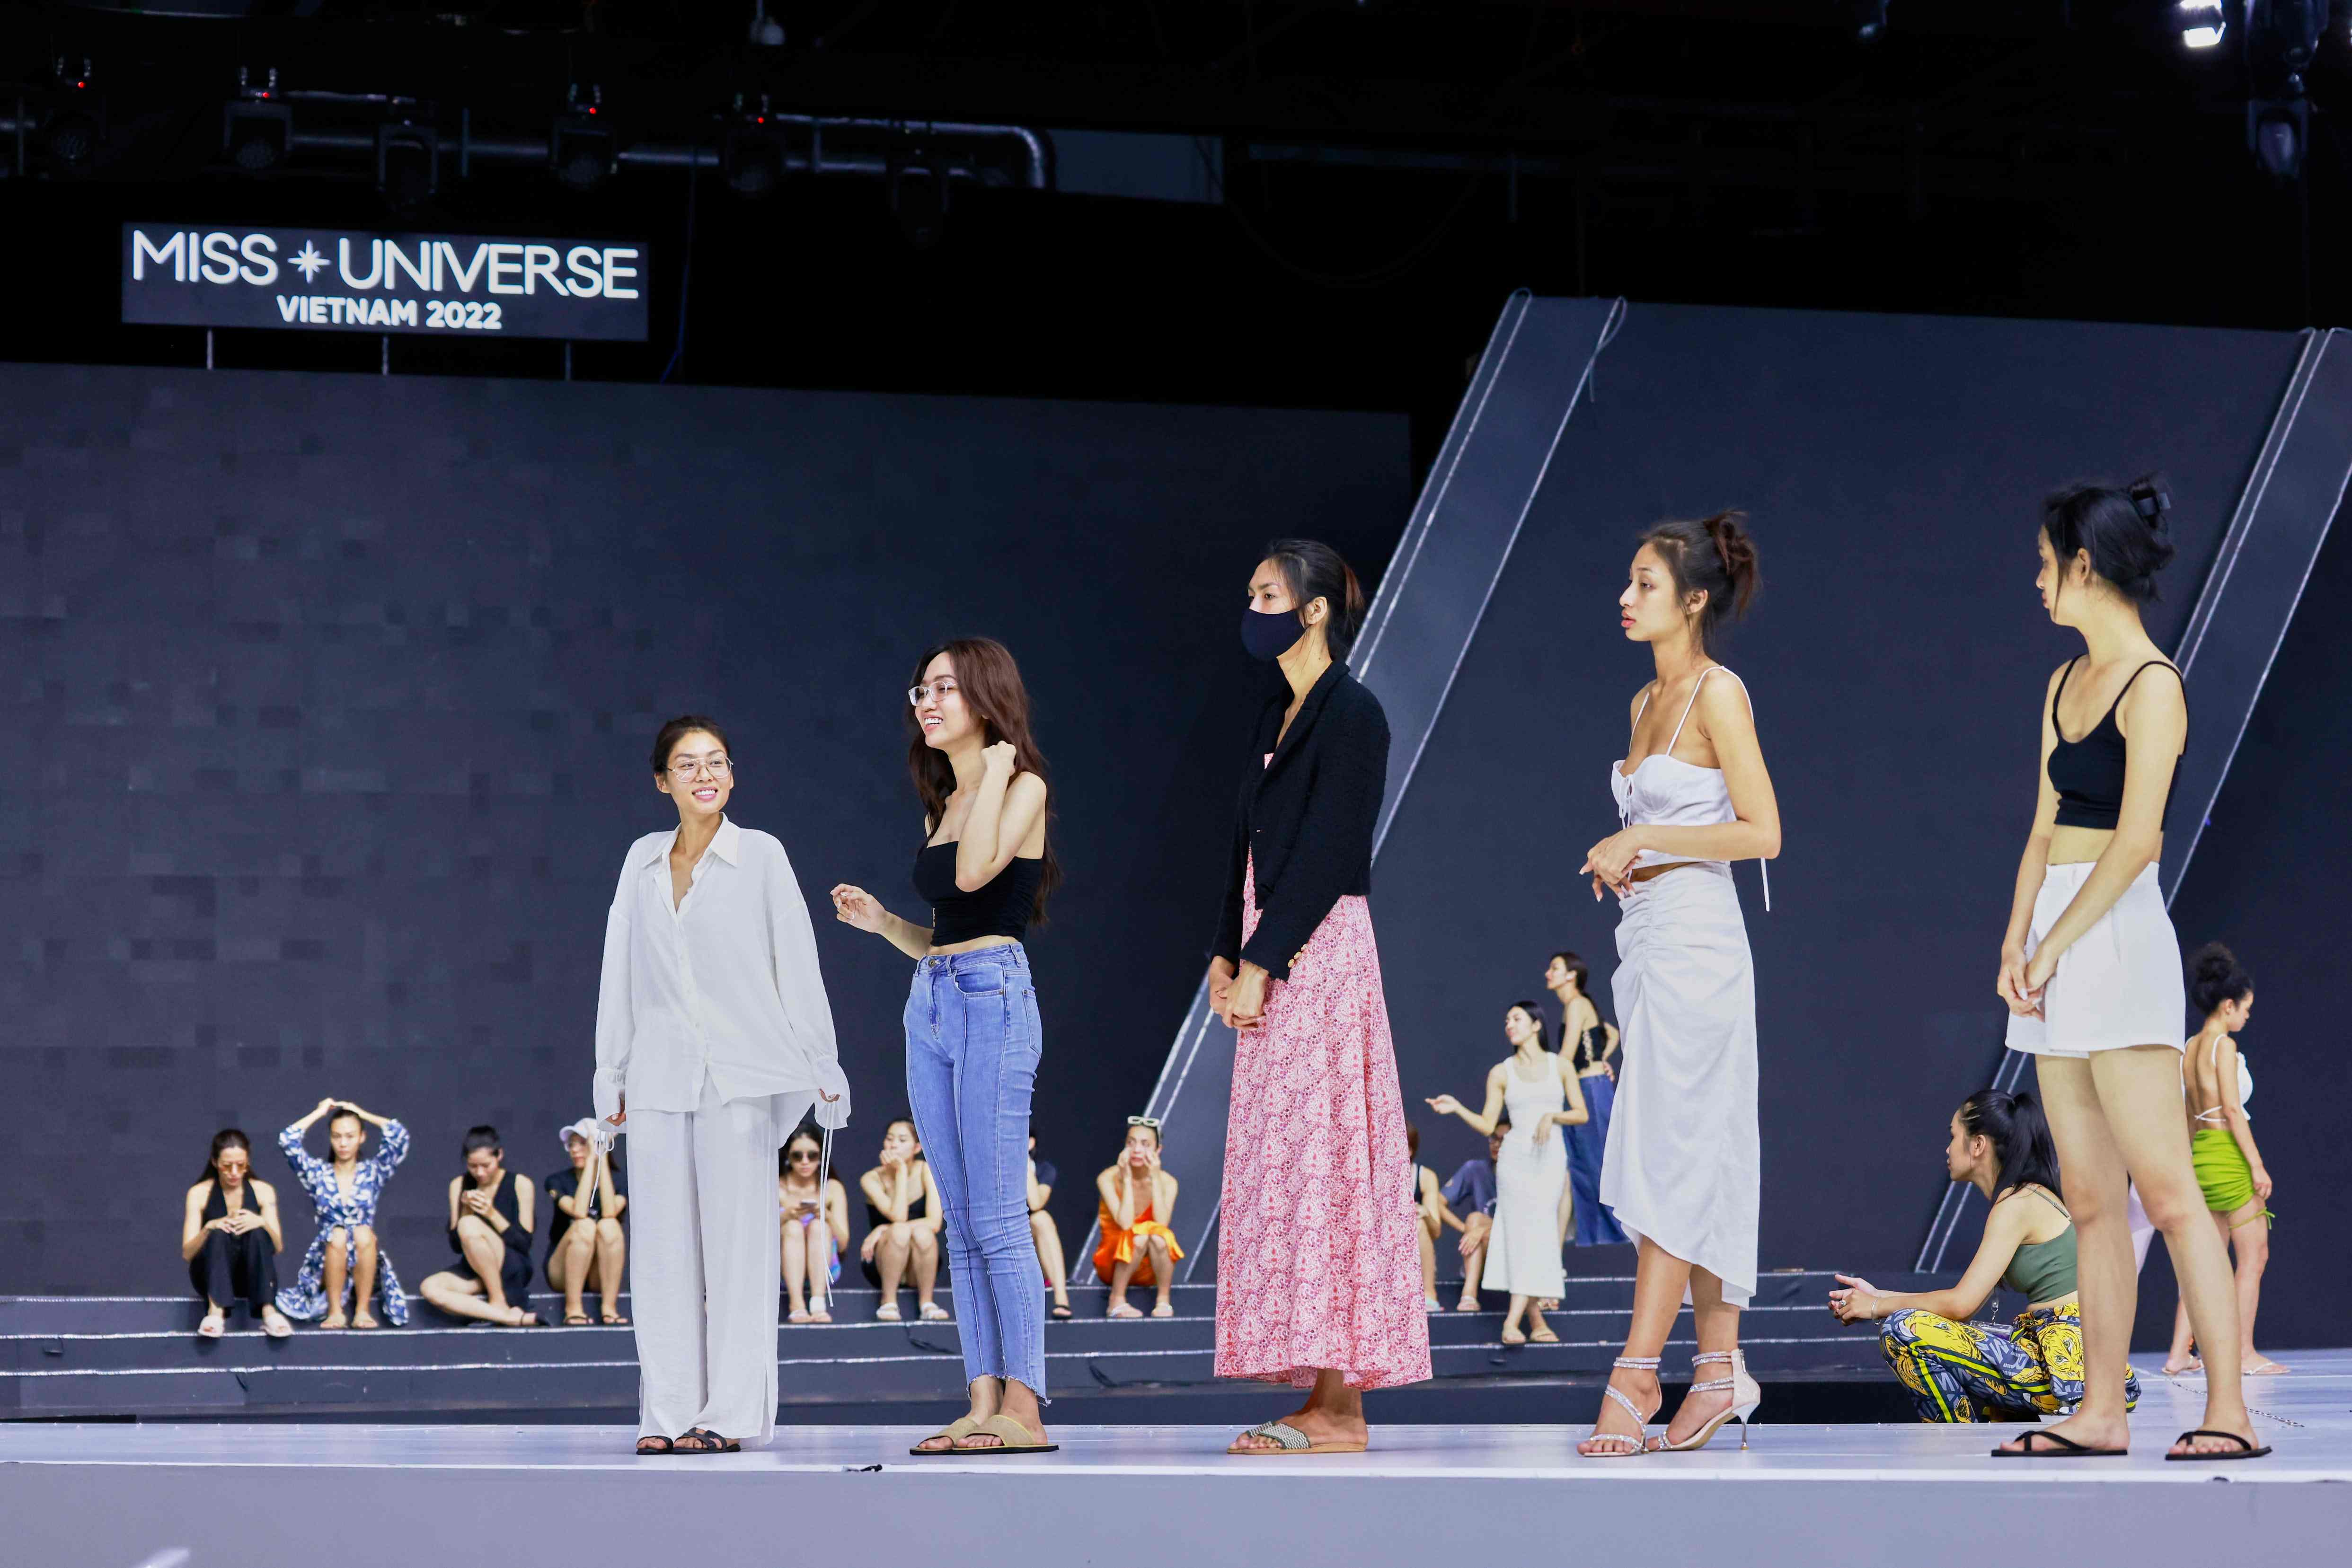 Top thí sinh nổi bật gồm Thảo Nhi Lê, Nhật Hà, Bảo Ngọc trên sân khấu. 